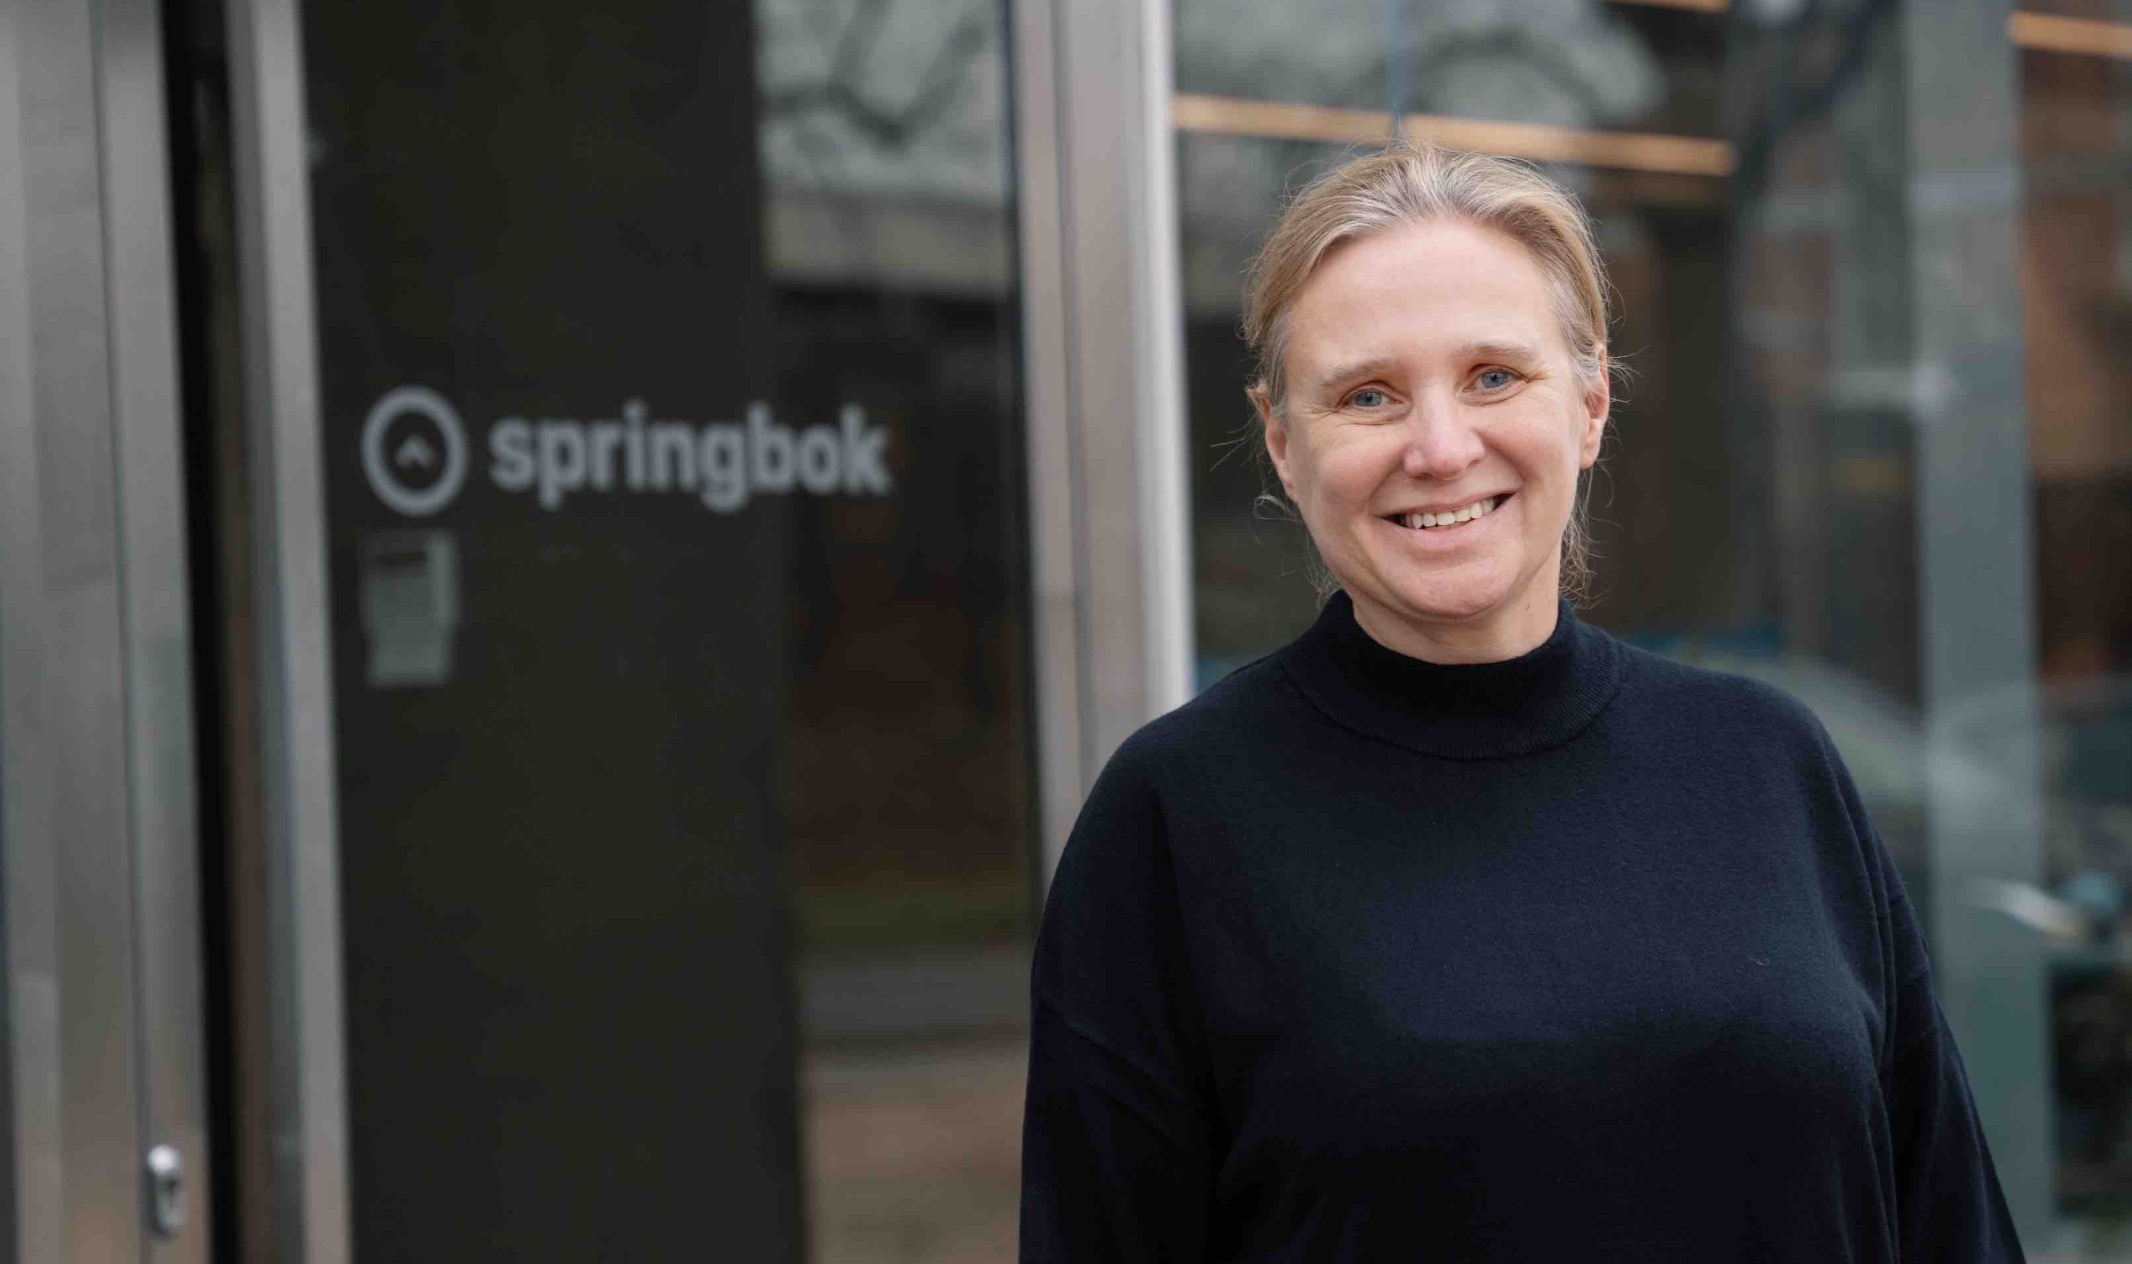 Springbok concilie IA et développement durable avec Mieke De Ketelaere